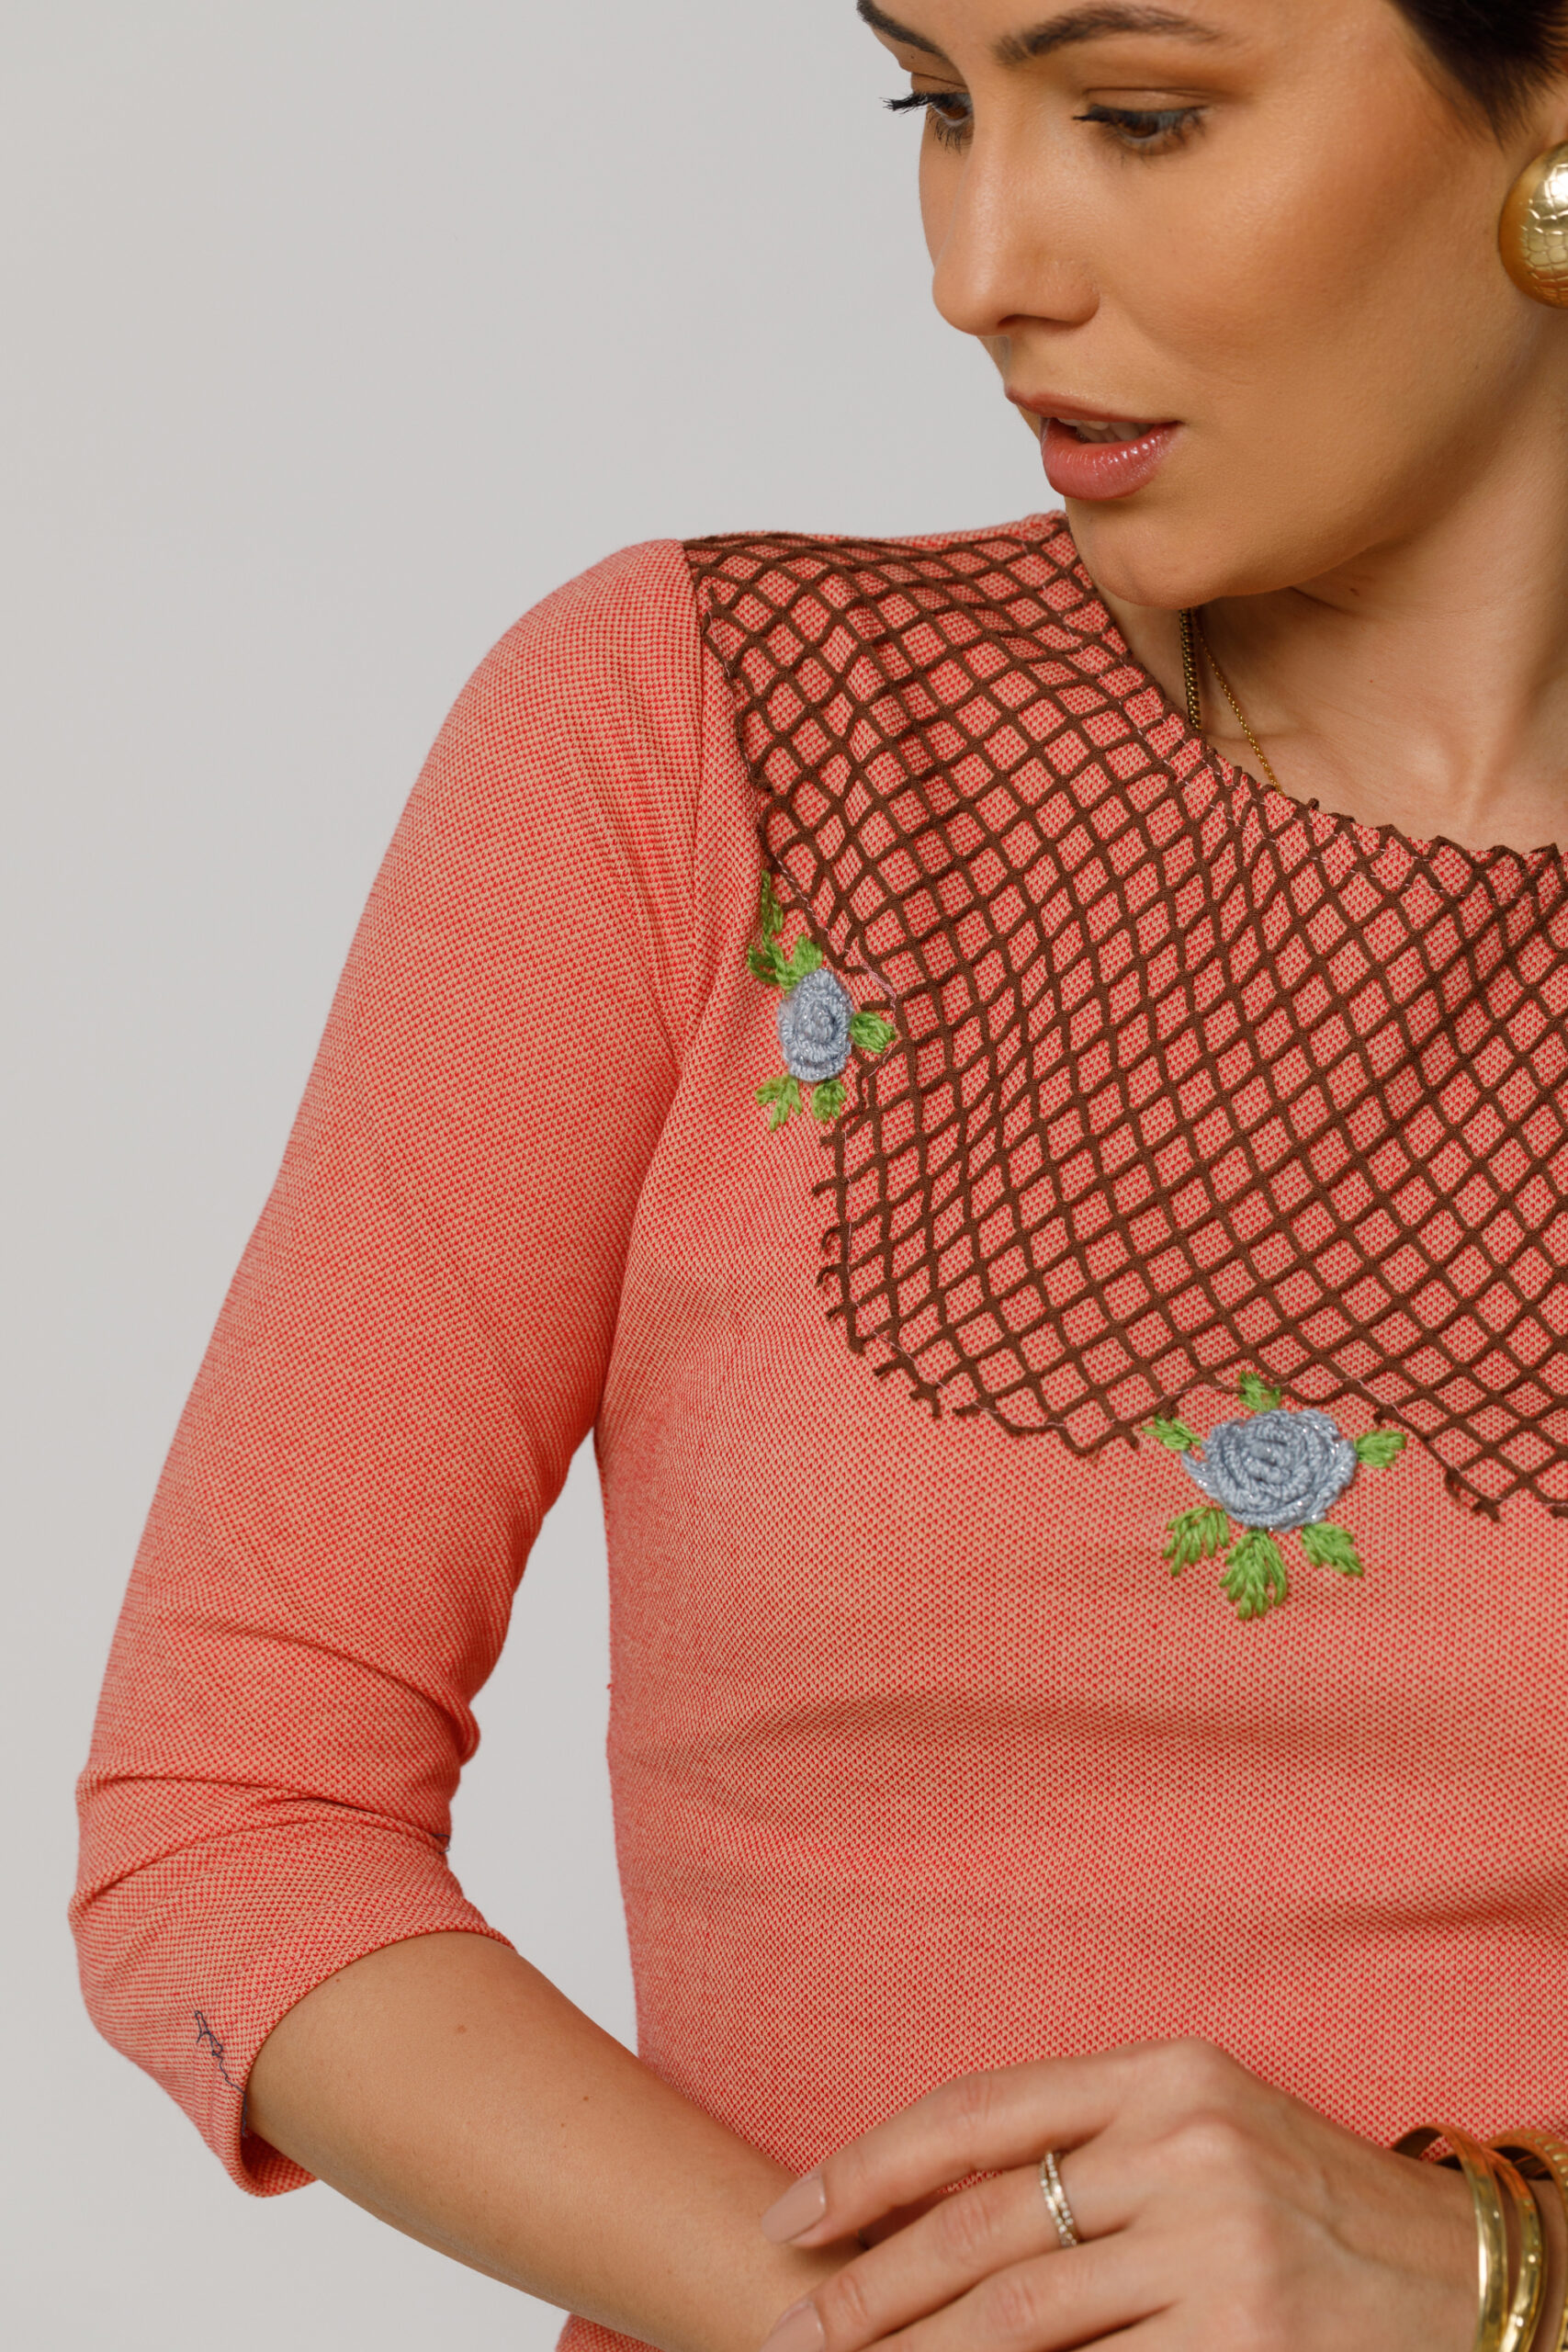 Bluza COCO cu aplicatie din plasa si broderie florala. Materiale naturale, design unicat, cu broderie si aplicatii handmade